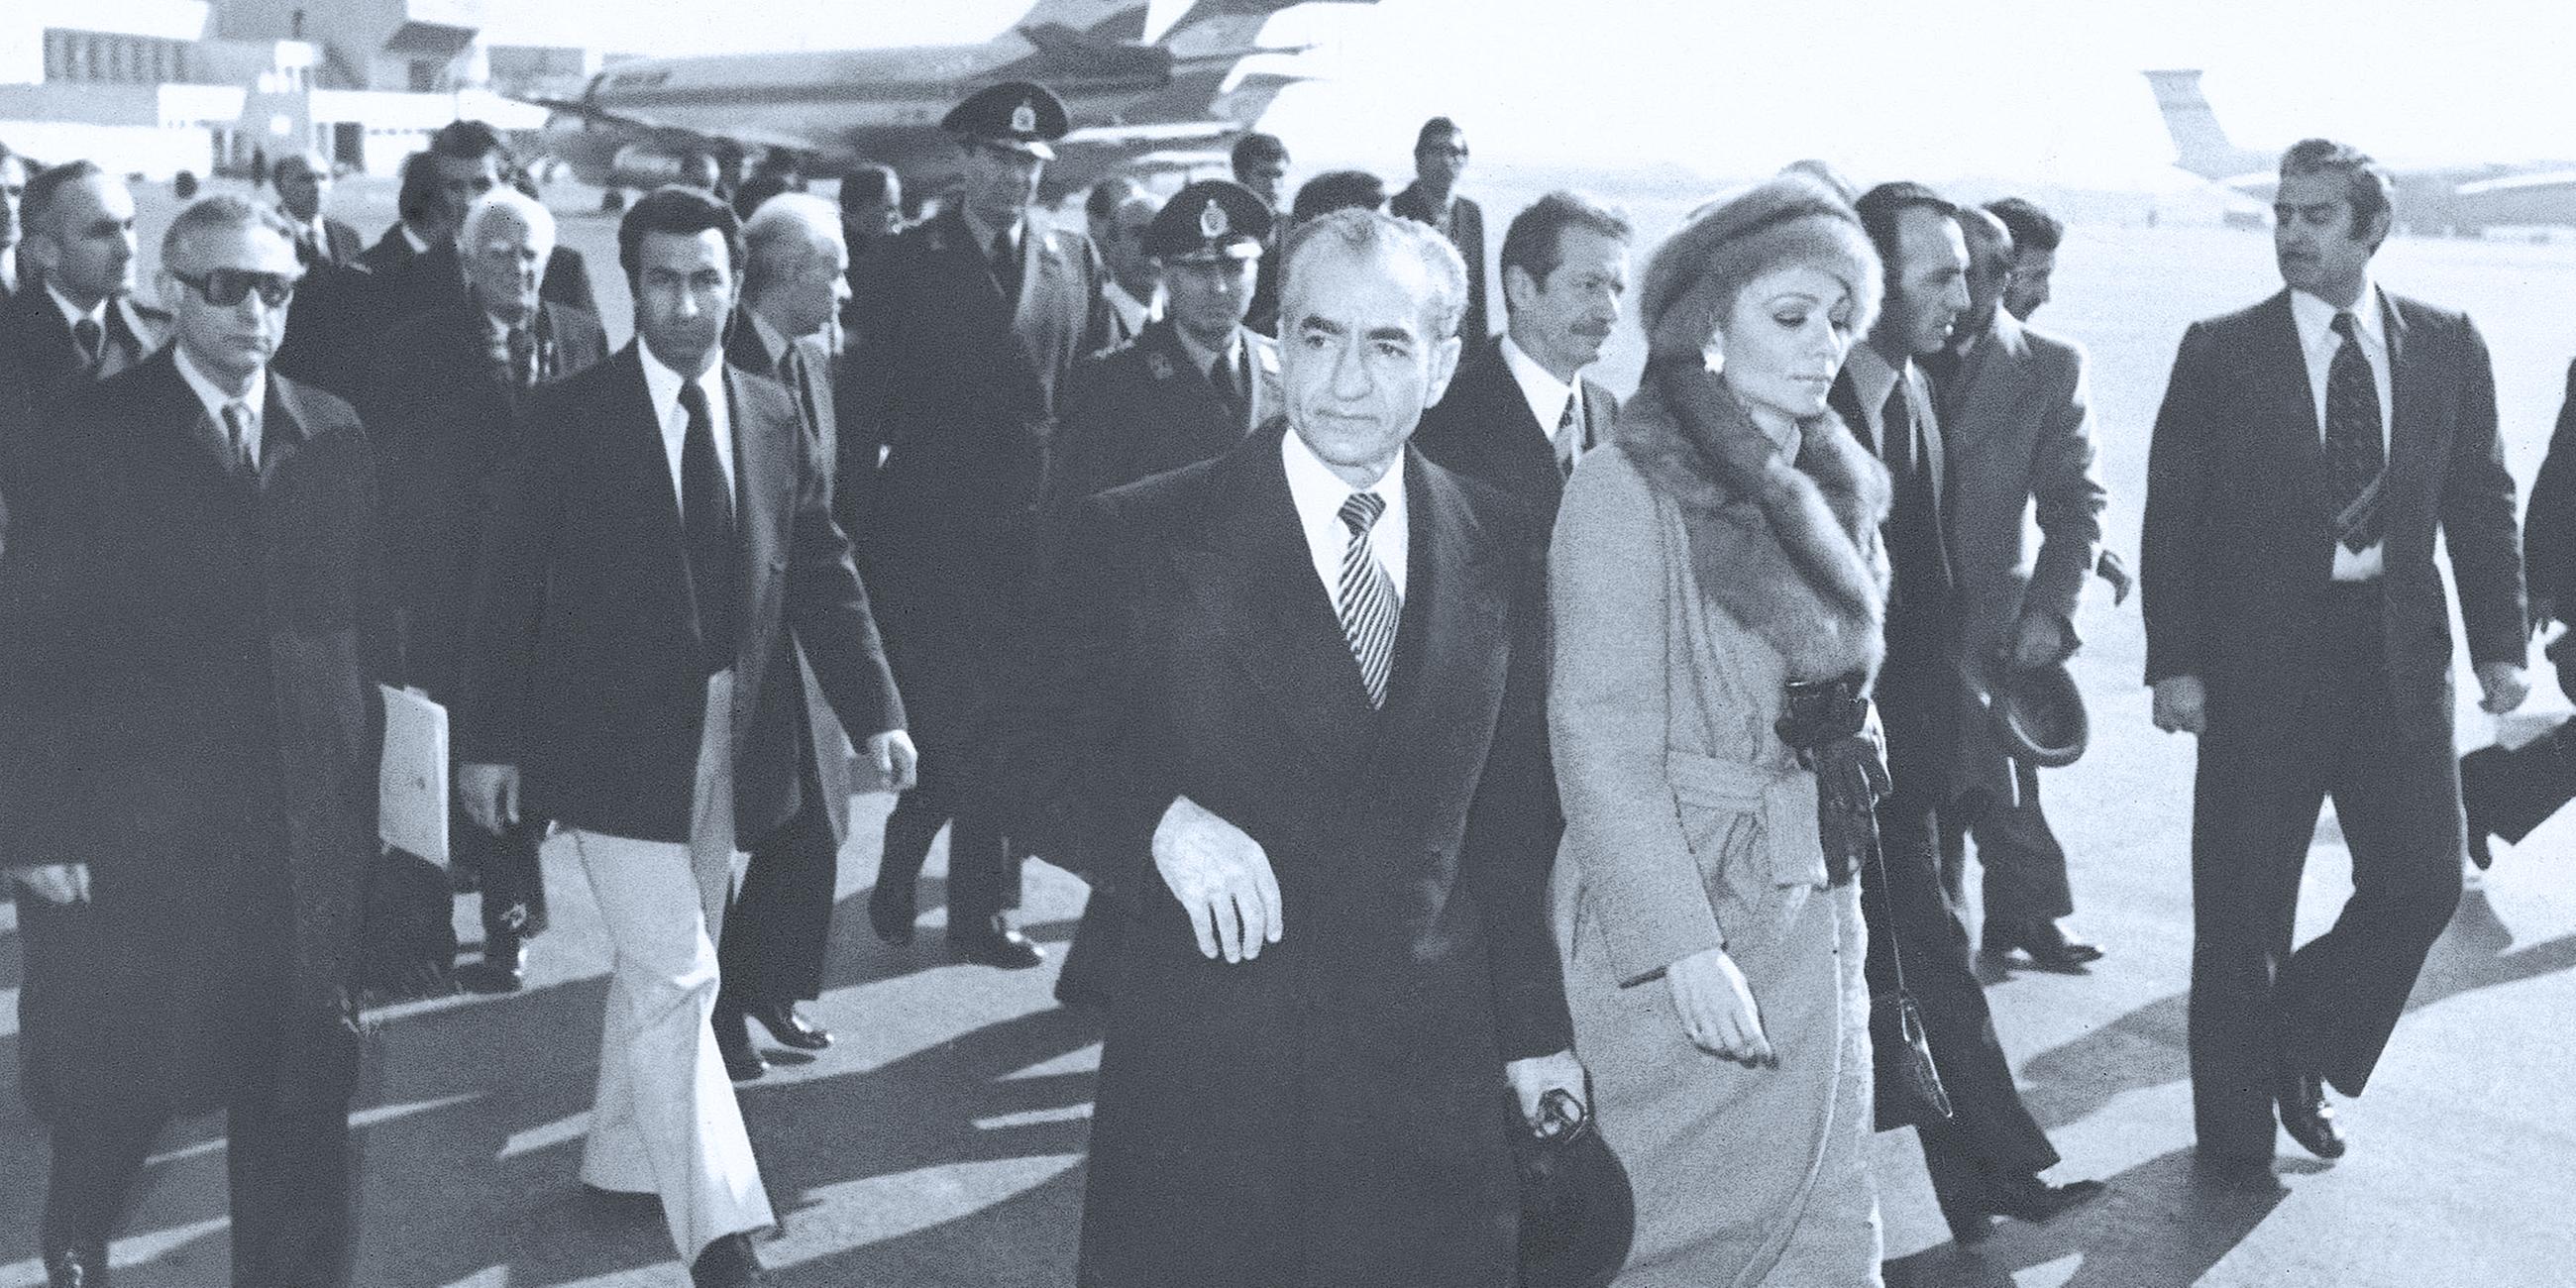 Archiv: Schah Mohammad Reza Pahlavi und Kaiserin Farah gehen über das Rollfeld des Mehrabad Airport zu einem Flugzeug, um das Land zu verlassen, aufgenommen am 16.01.1979 in Teheran, Iran.